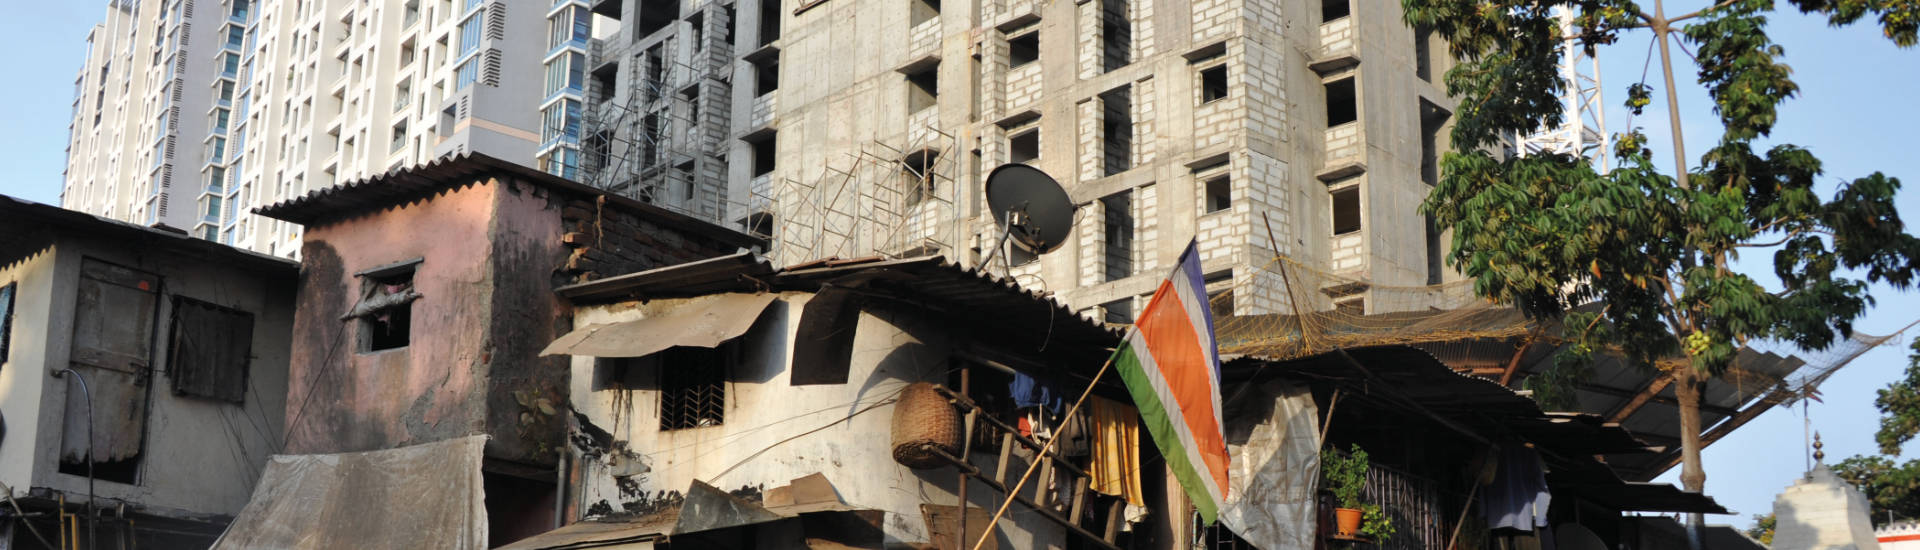 Einfache Behausungen vor Hochhäusern in Mumbai